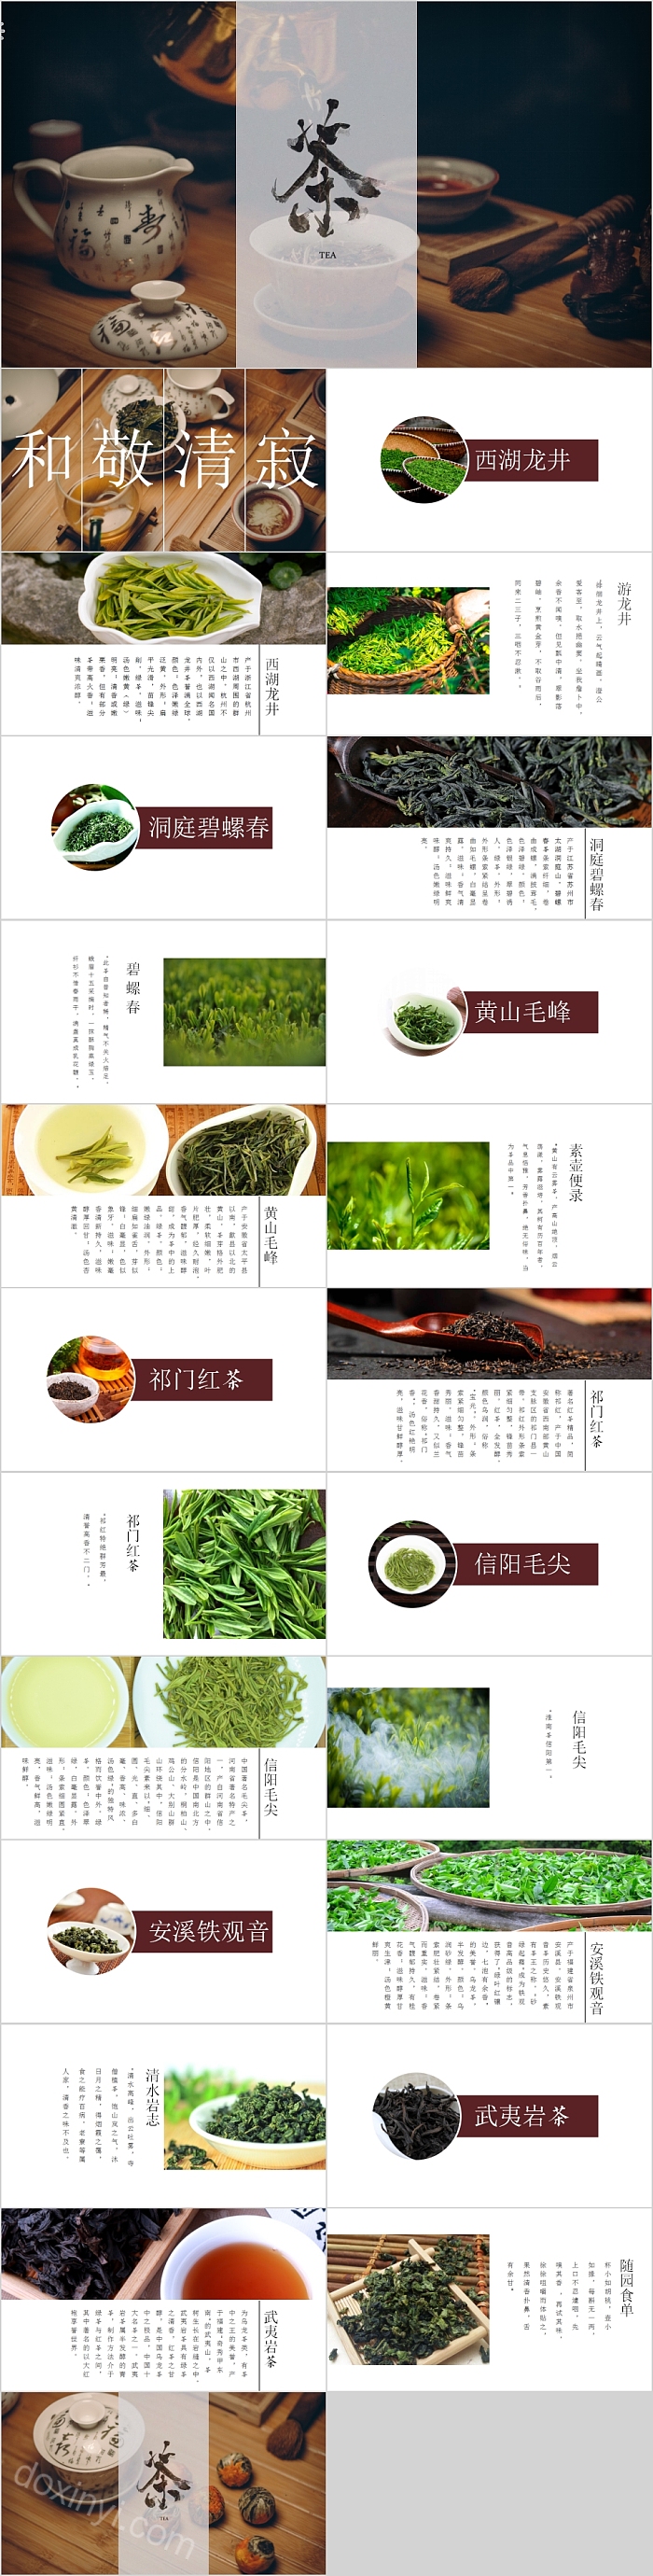 茶艺文化茶叶产品宣传PPT